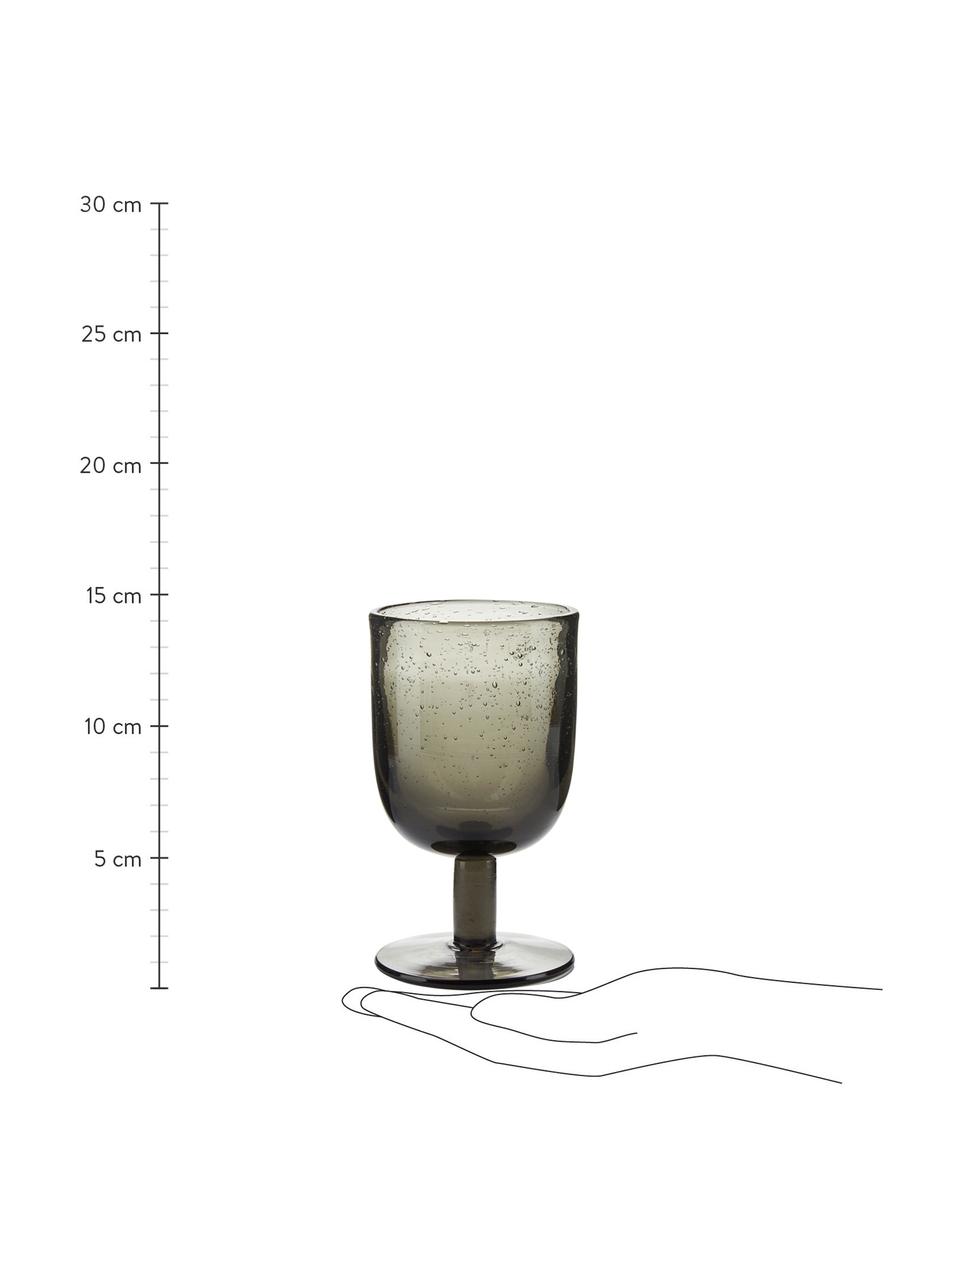 Mondgeblazen wijnglazen Leyla in grijs, 6 stuks, Glas, Grijs, transparant, Ø 8 x H 14 cm, 320 ml